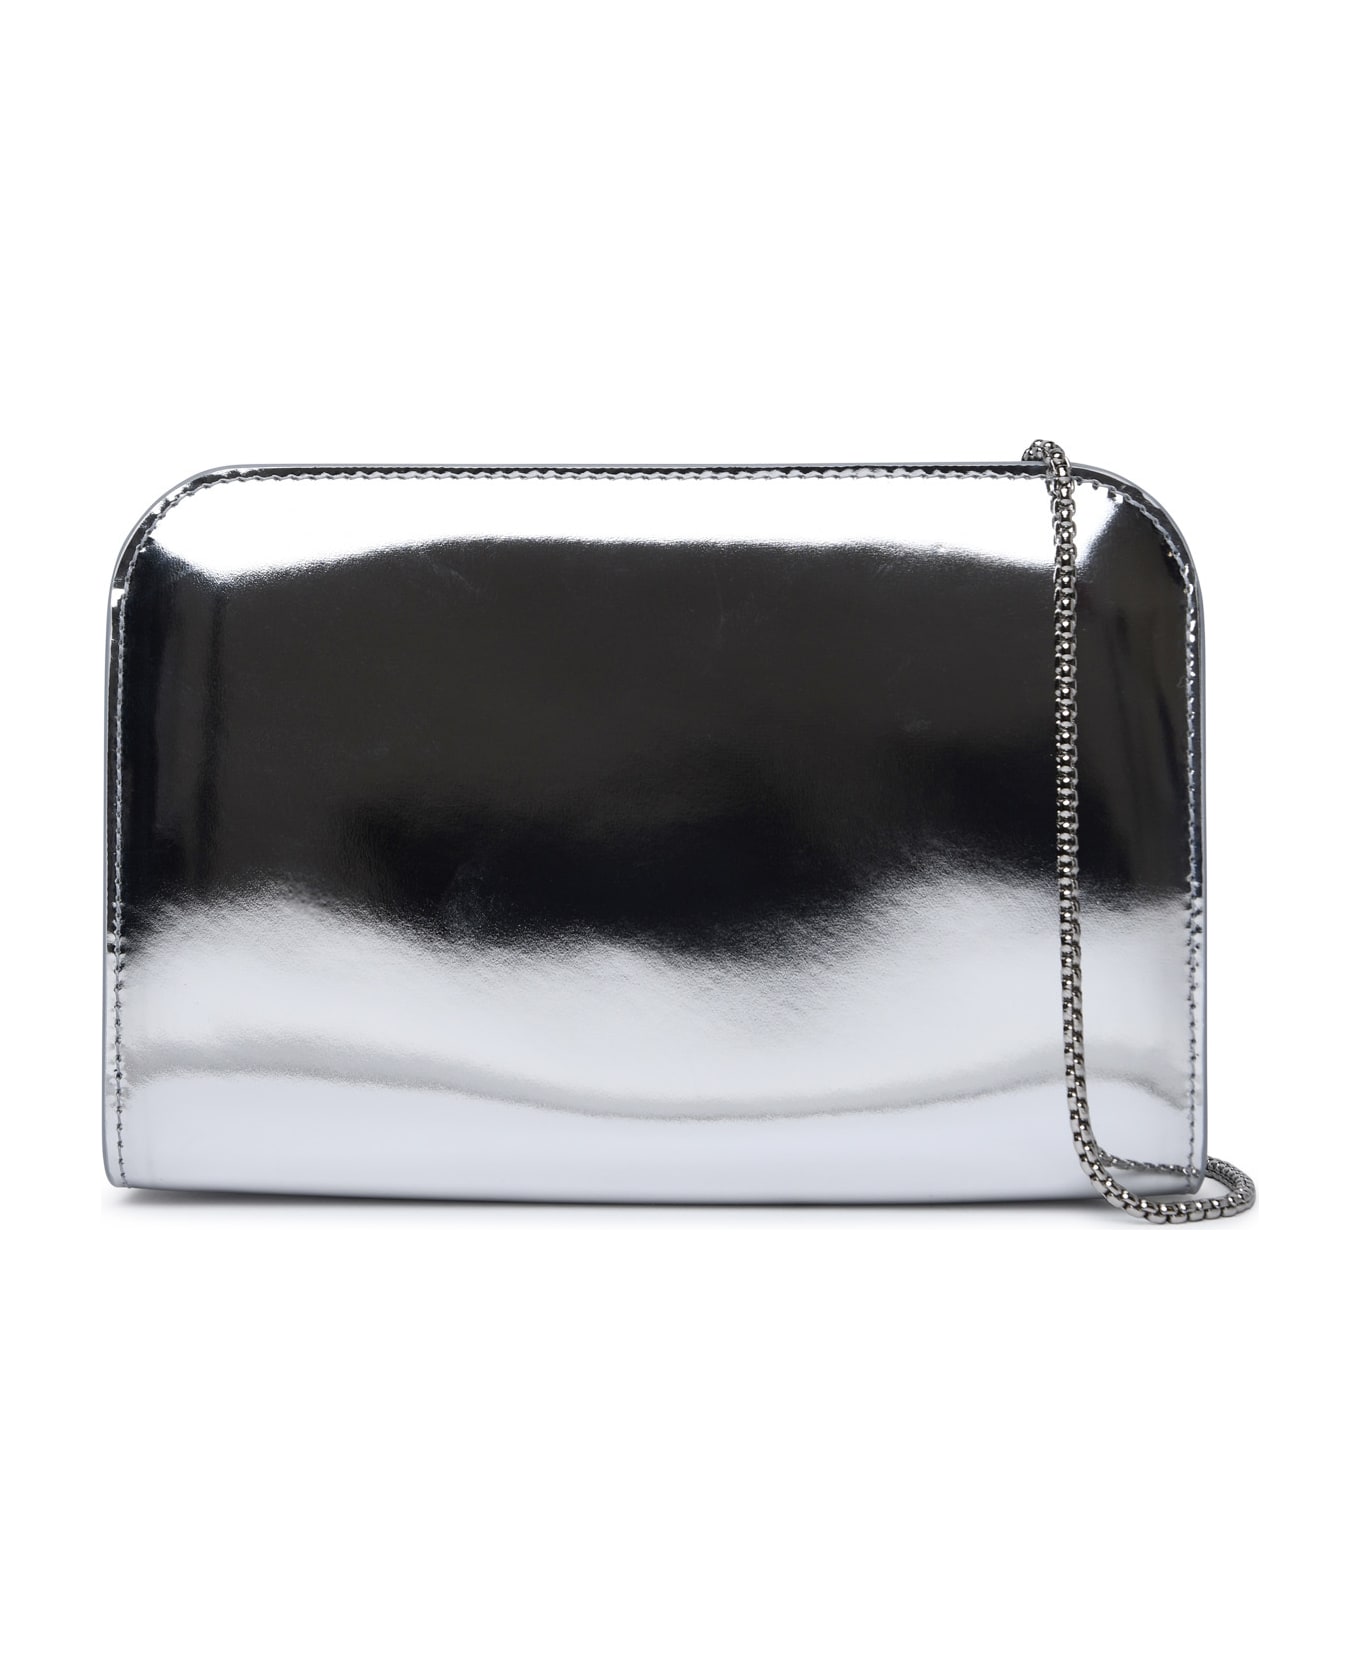 Ferragamo 'diana' Mini Clutch Bag In Silver Calf Leather - Silver